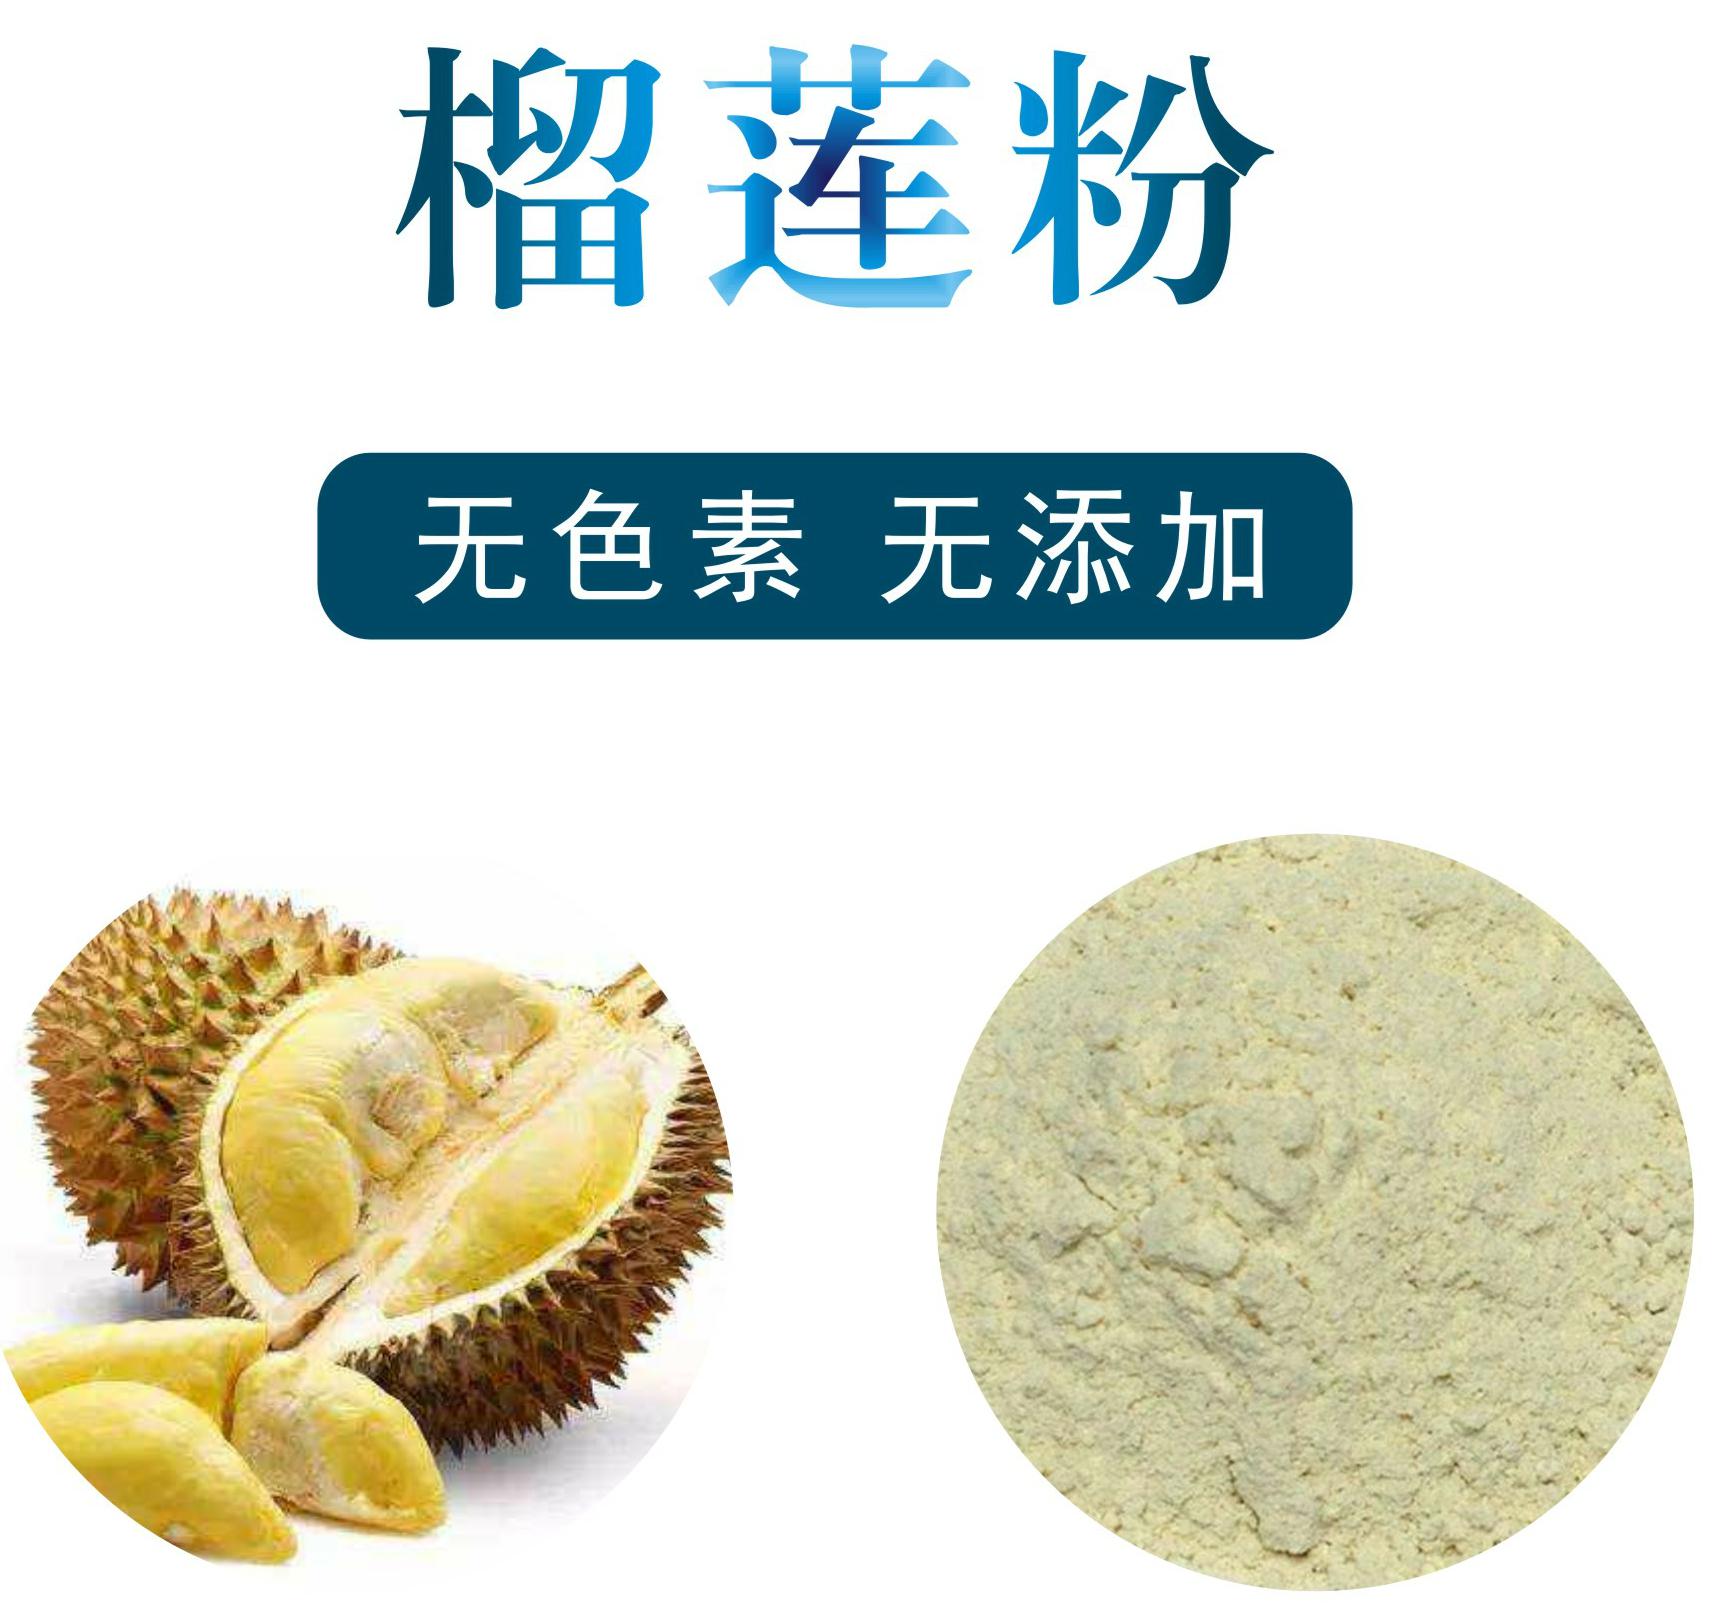 榴莲粉,Durian powder